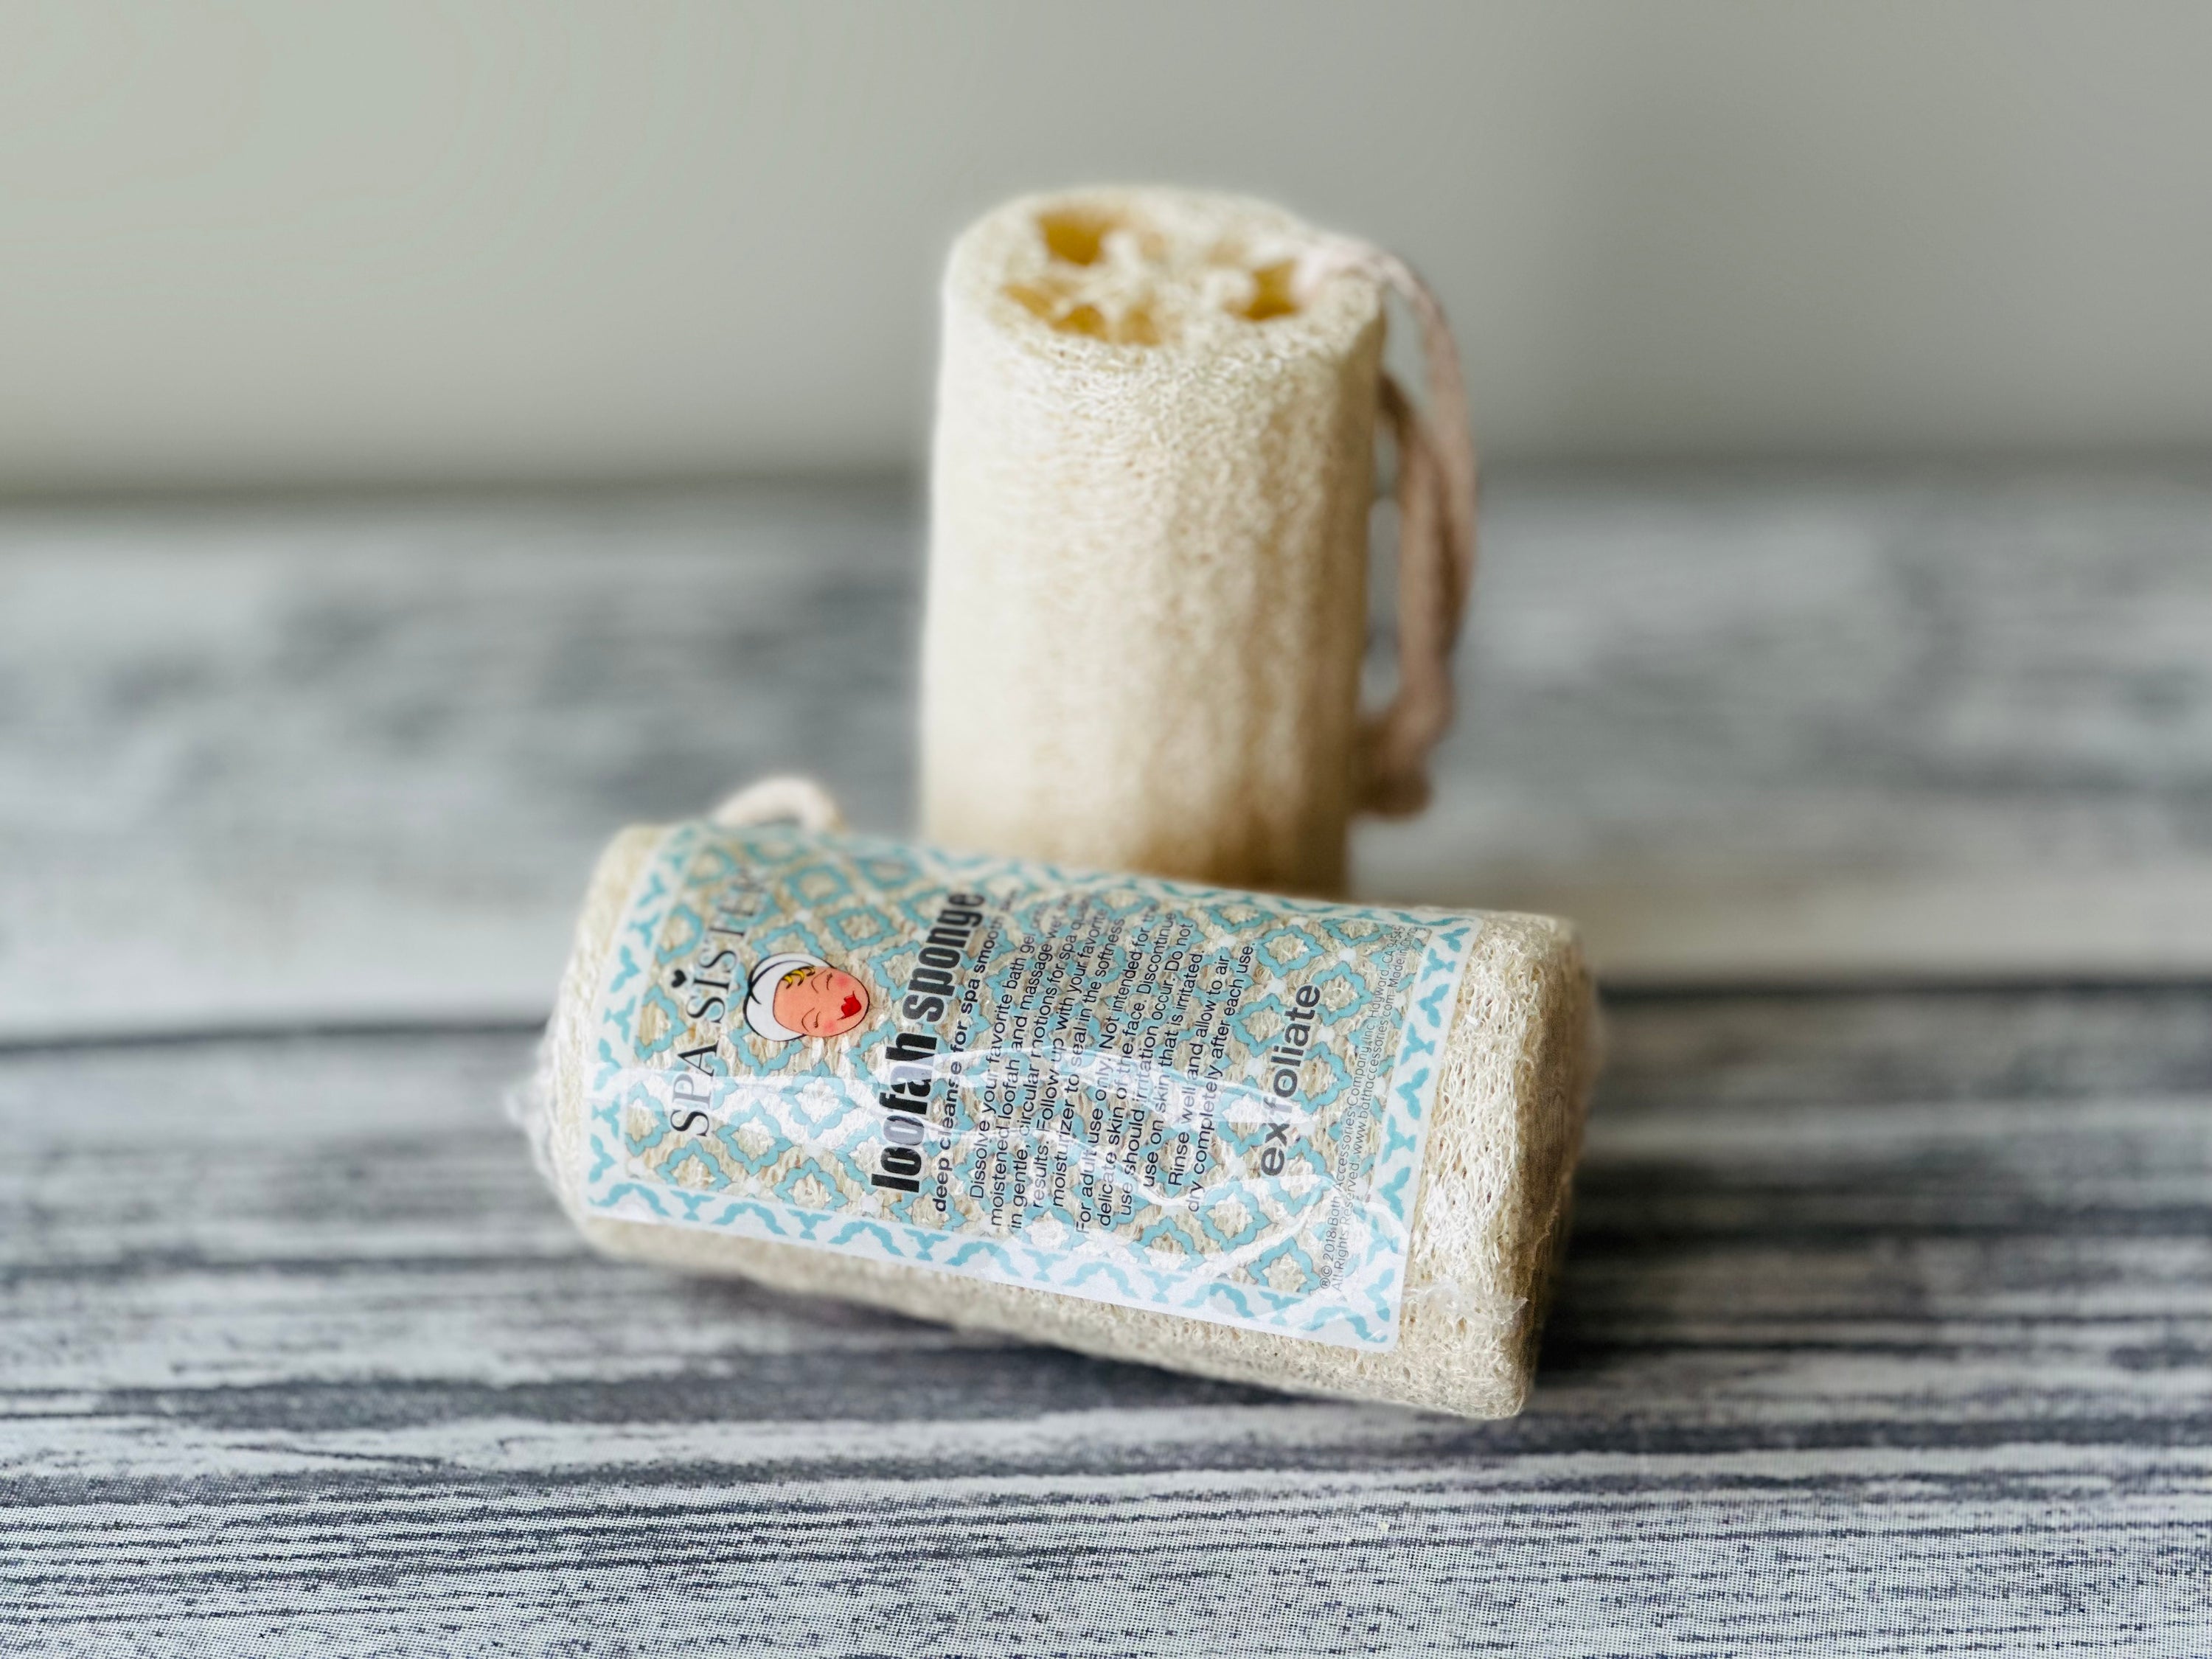 Loofah Sponge - Idaho Soap Company